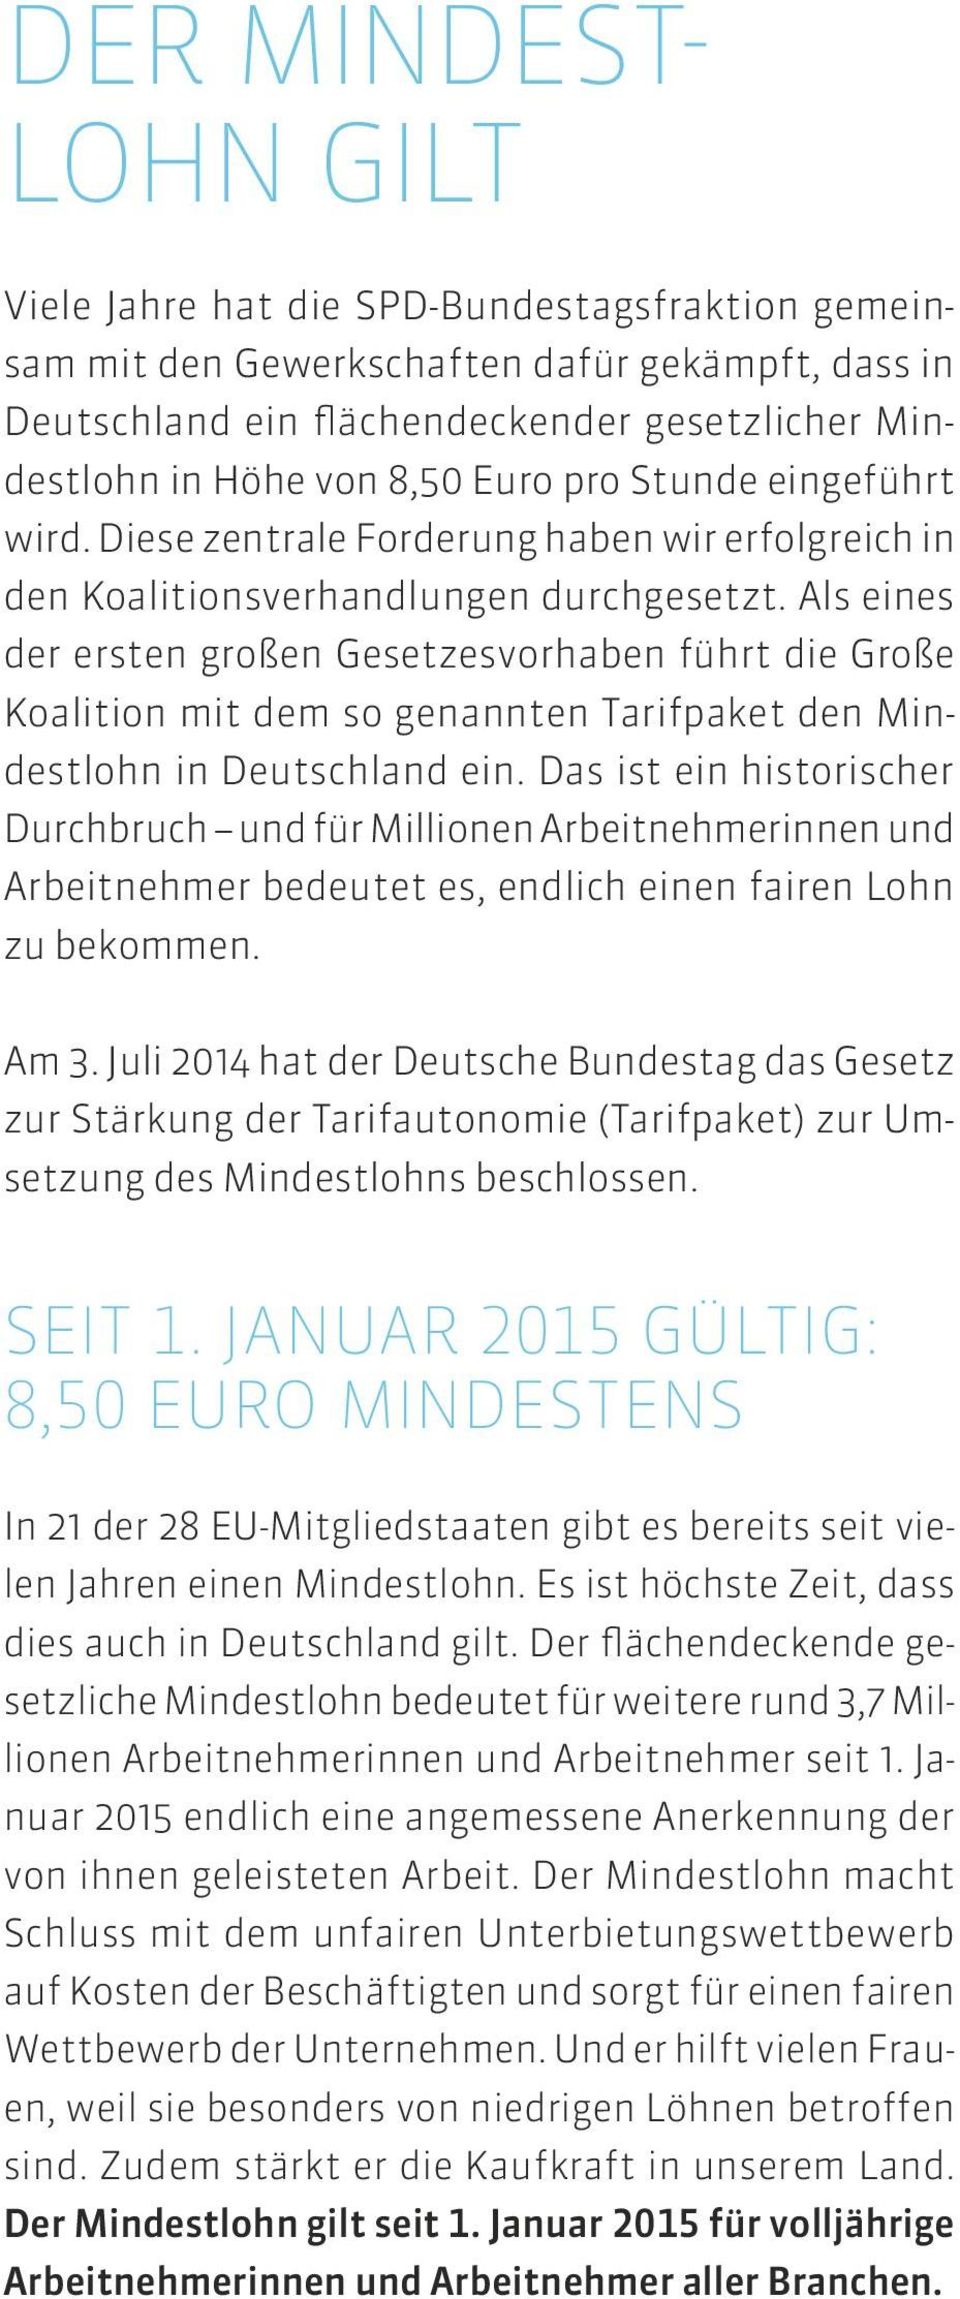 Als eines der ersten großen Gesetzesvorhaben führt die Große Koalition mit dem so genannten Tarifpaket den Mindestlohn in Deutschland ein.